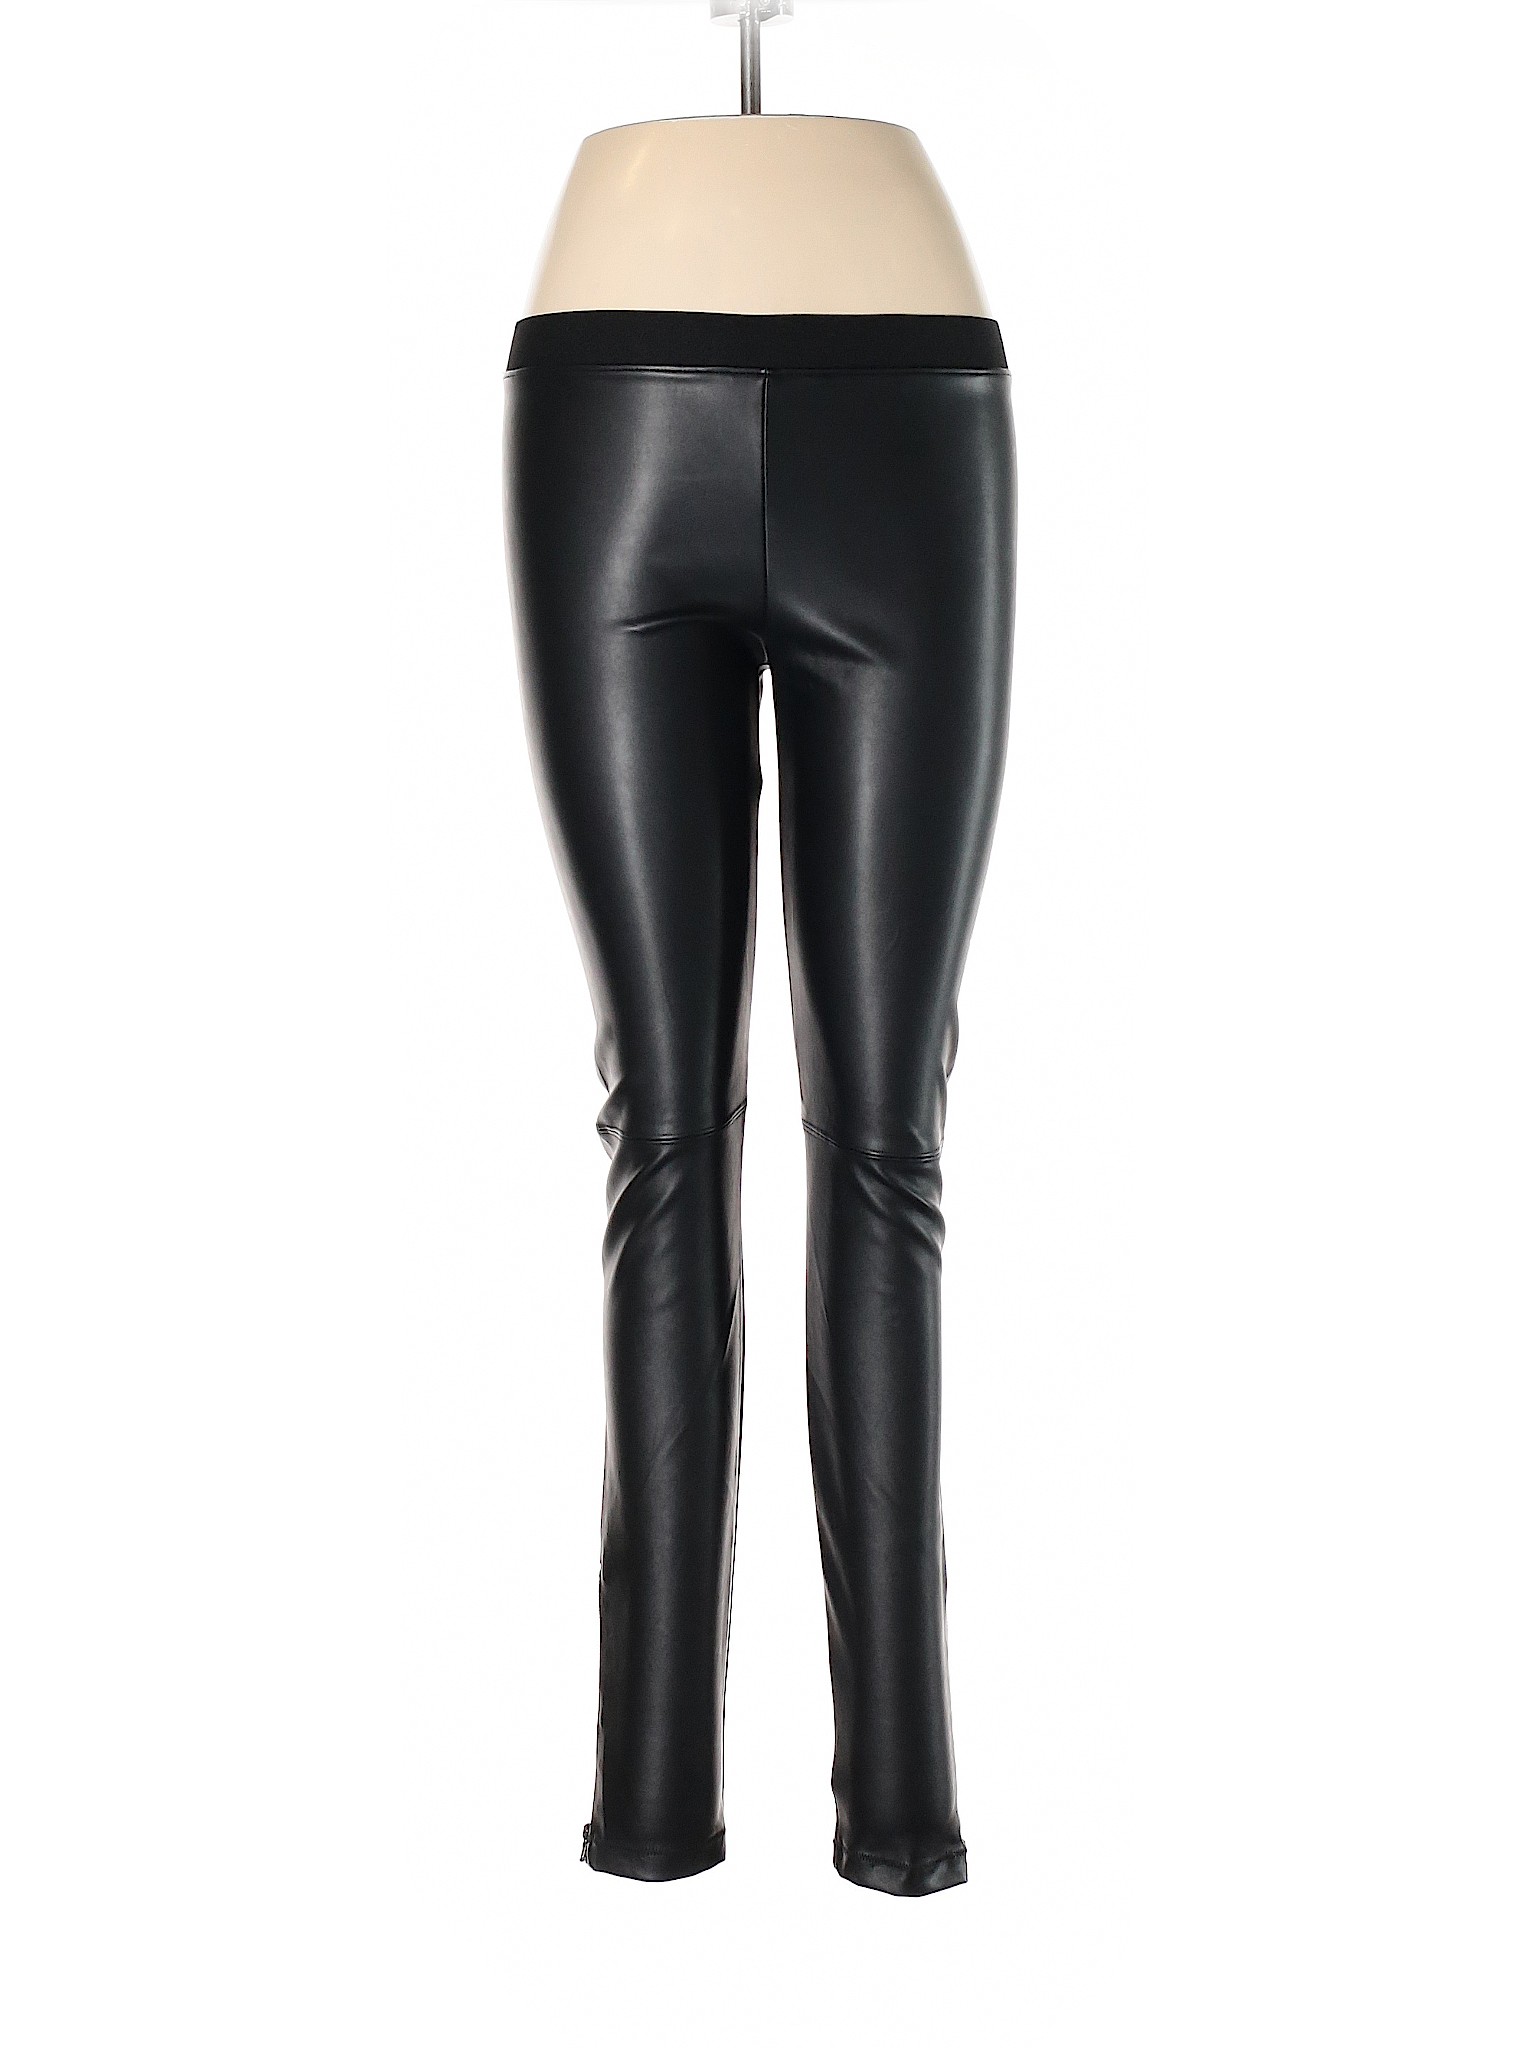 David Lerner Women Black Faux Leather Pants M | eBay